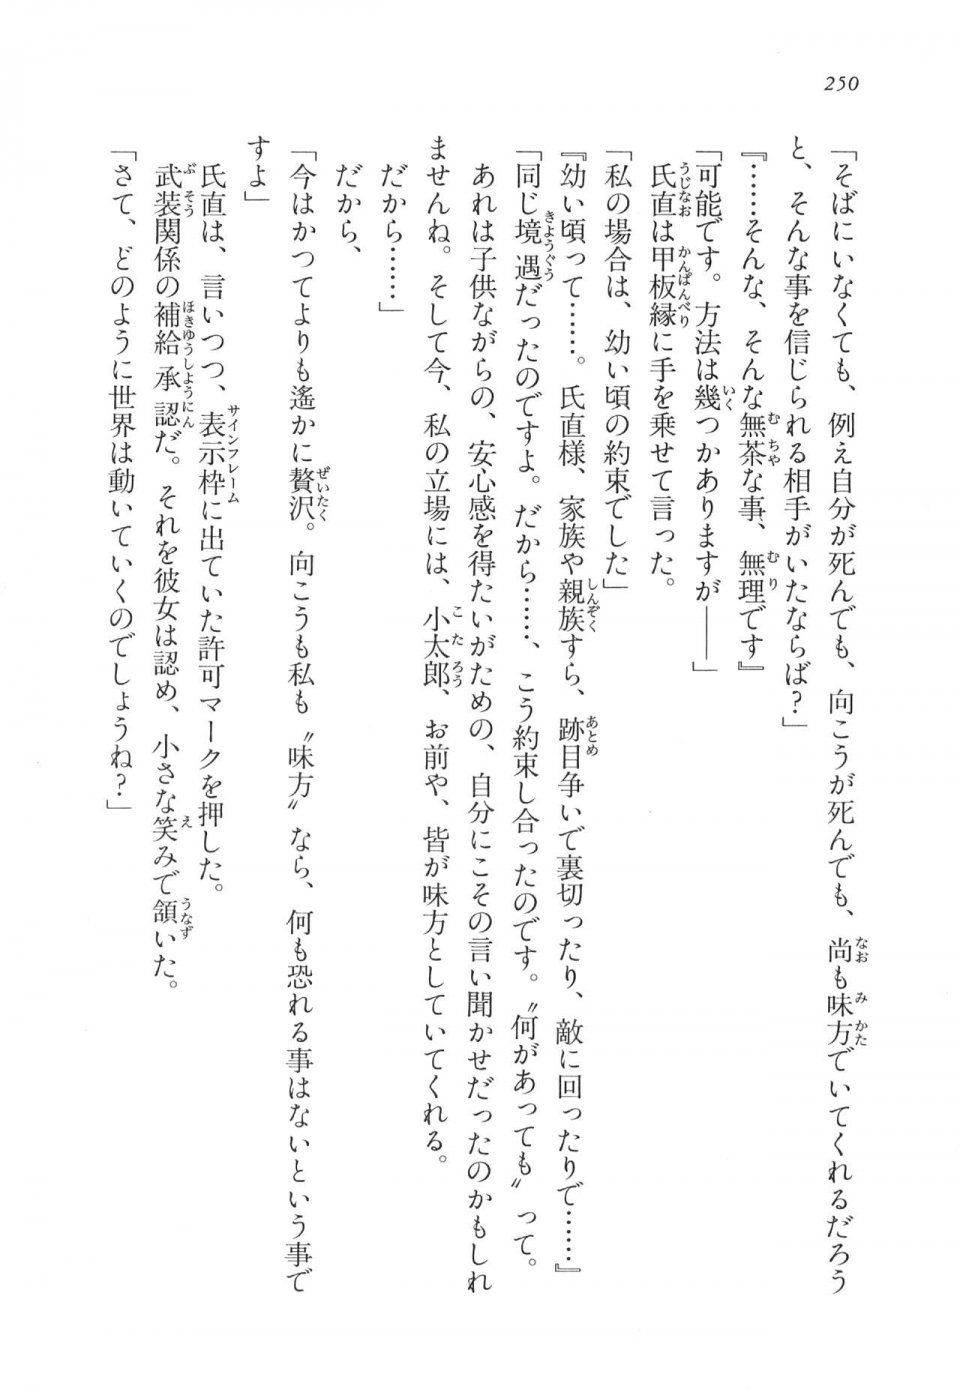 Kyoukai Senjou no Horizon LN Vol 11(5A) - Photo #250